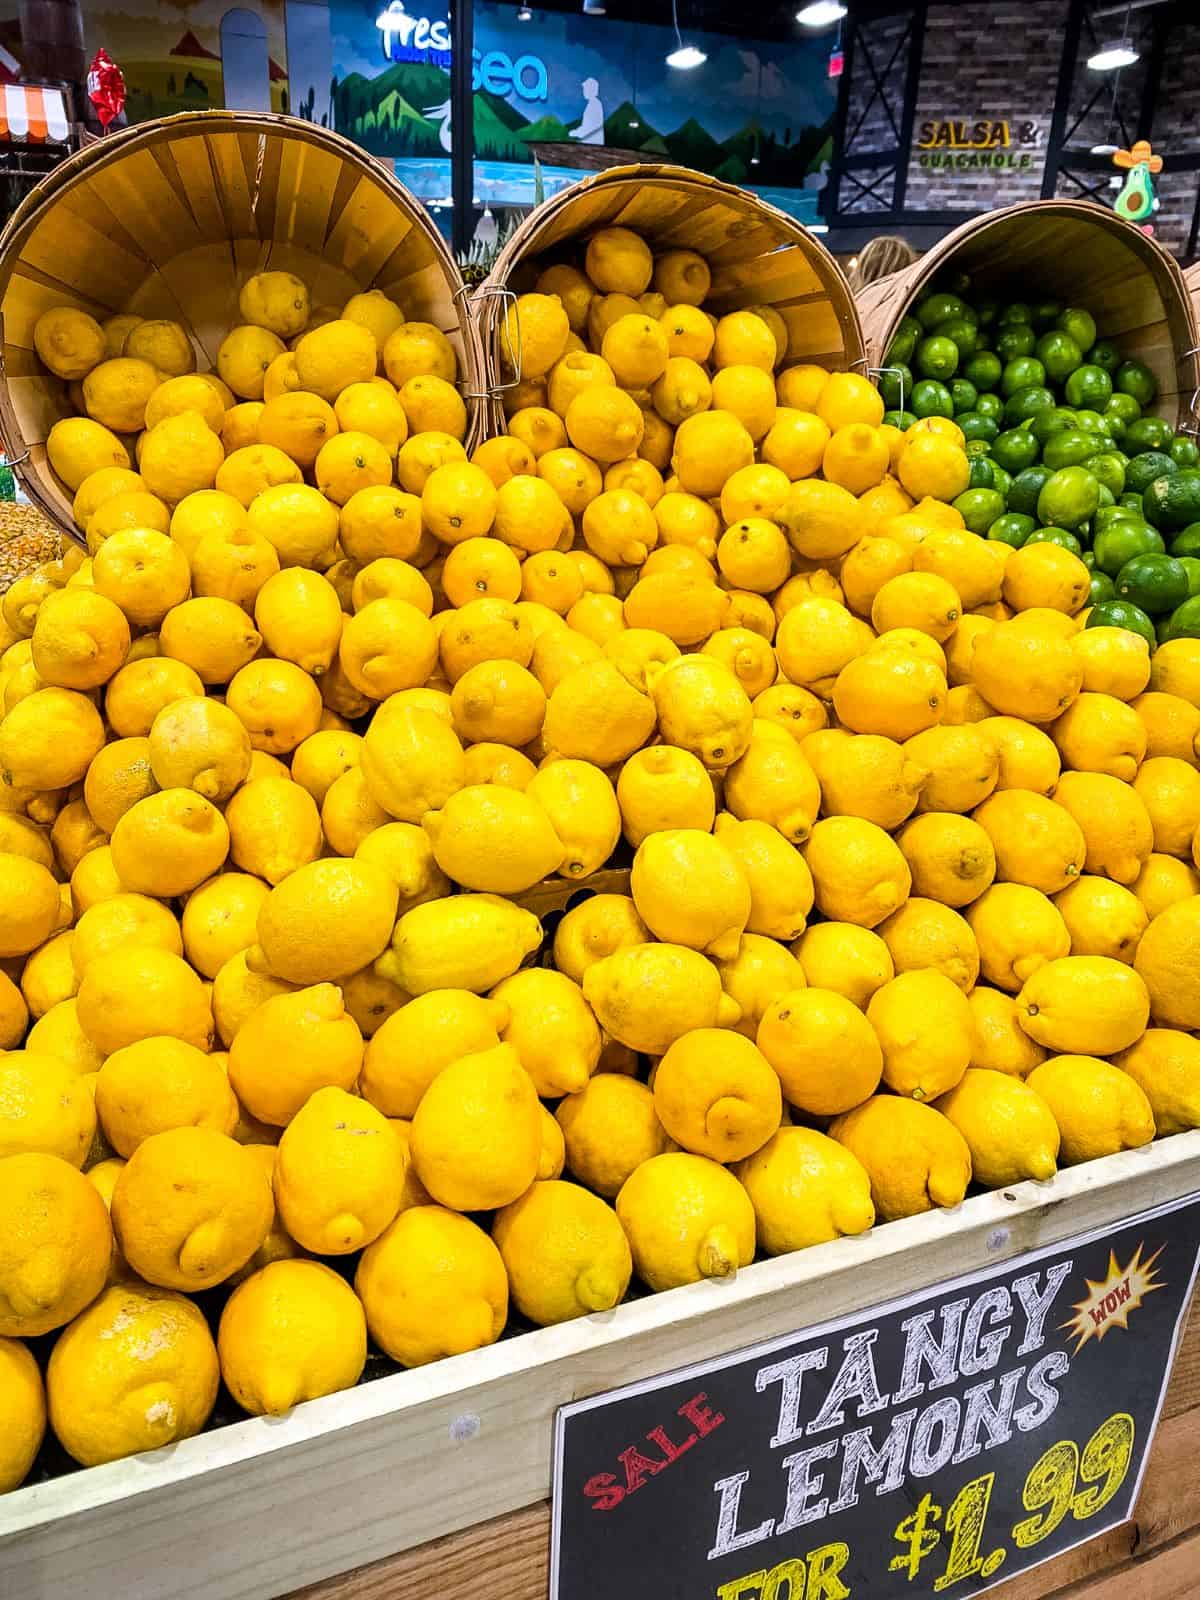 Lemons in supermarket.